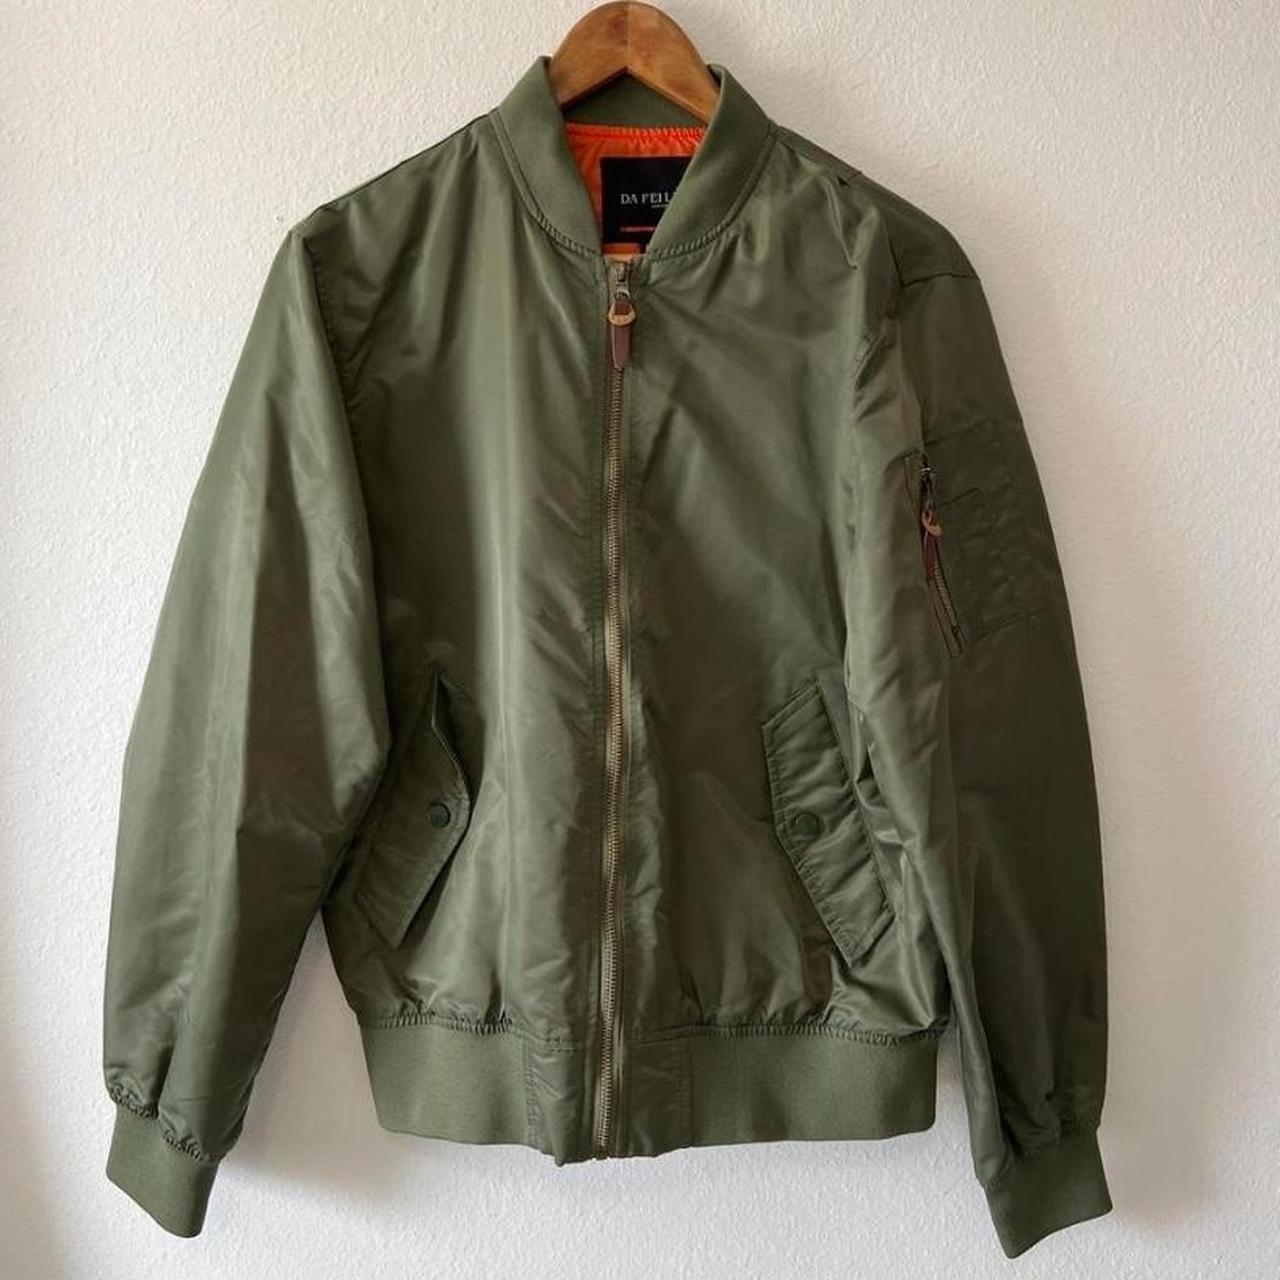 Green “Da Fei Li” Bomber Jacket In great condition,... - Depop